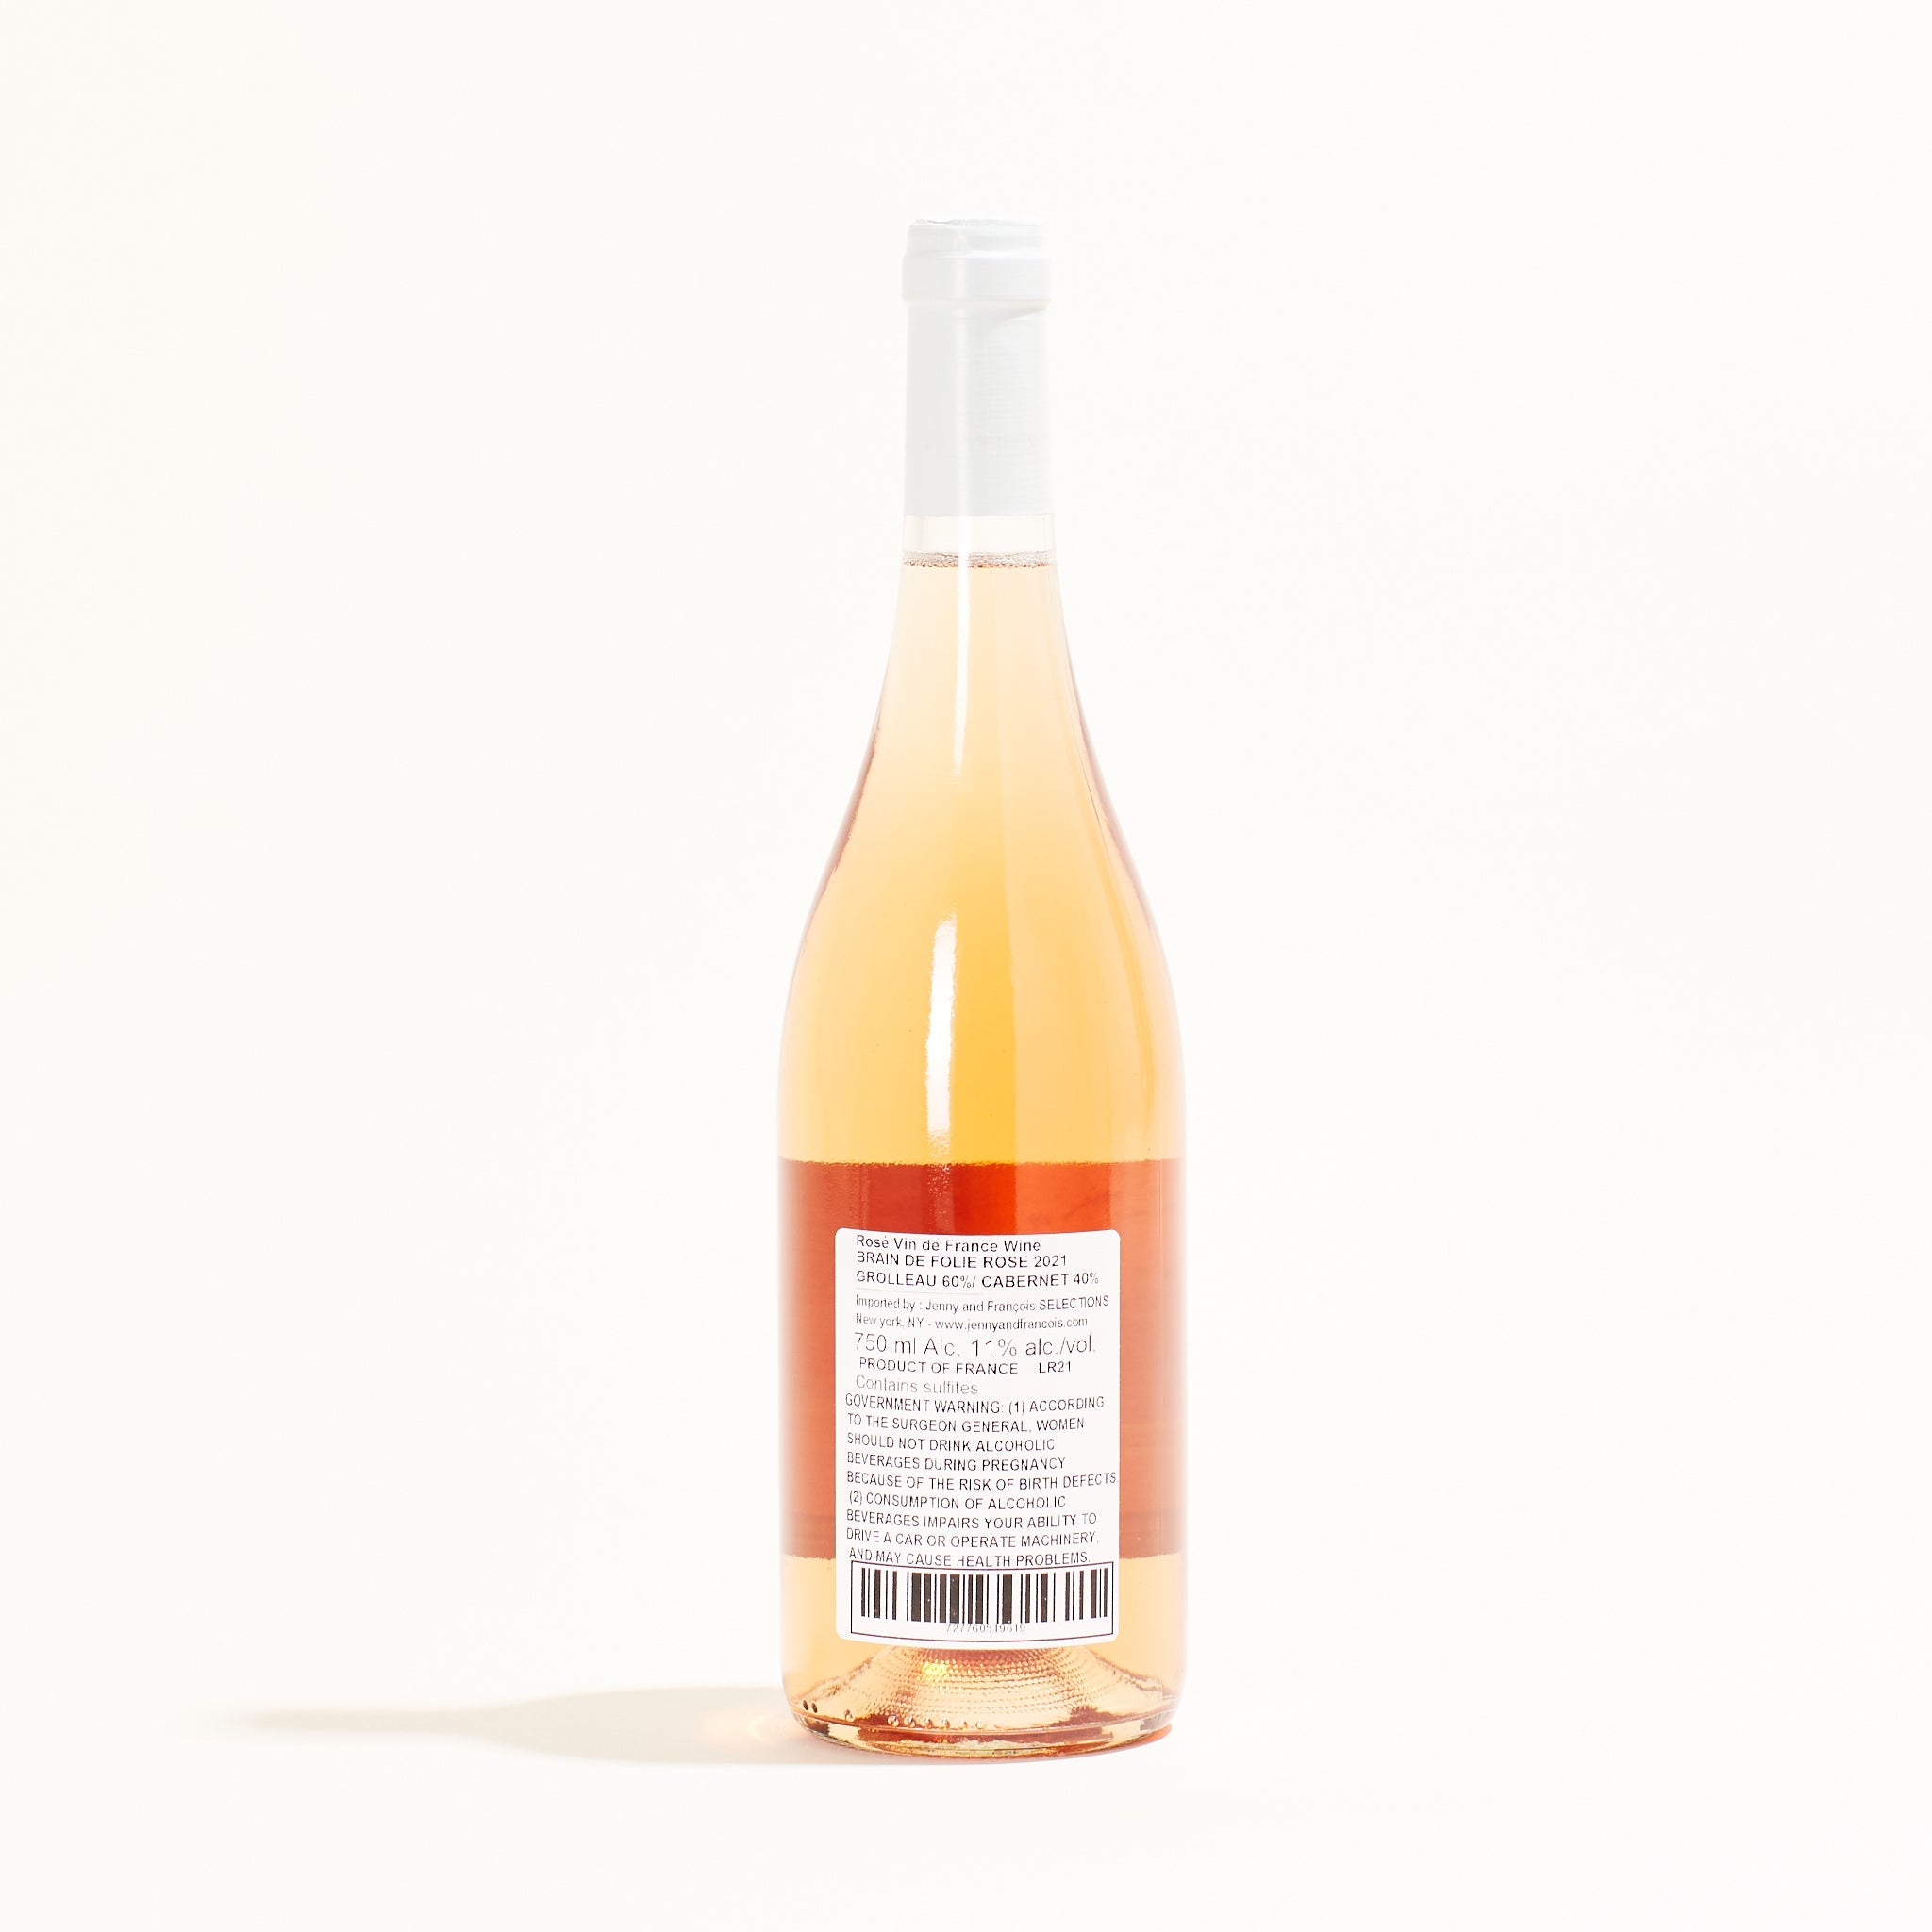 Mortier Brain de Folie Rosé natural Rosé wine Loire France back label